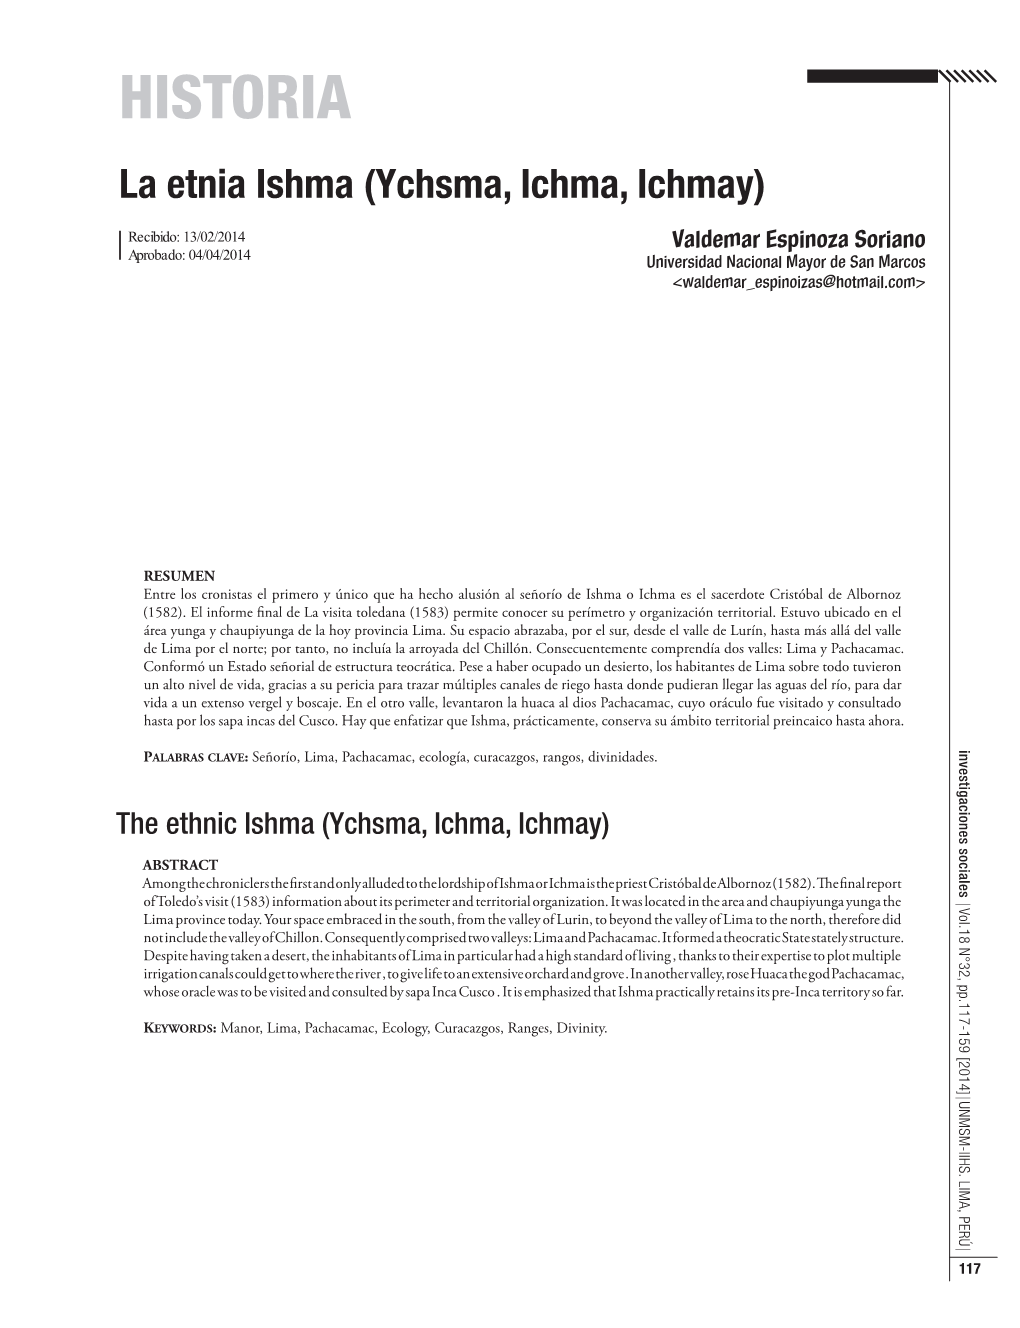 HISTORIA La Etnia Ishma (Ychsma, Ichma, Ichmay)